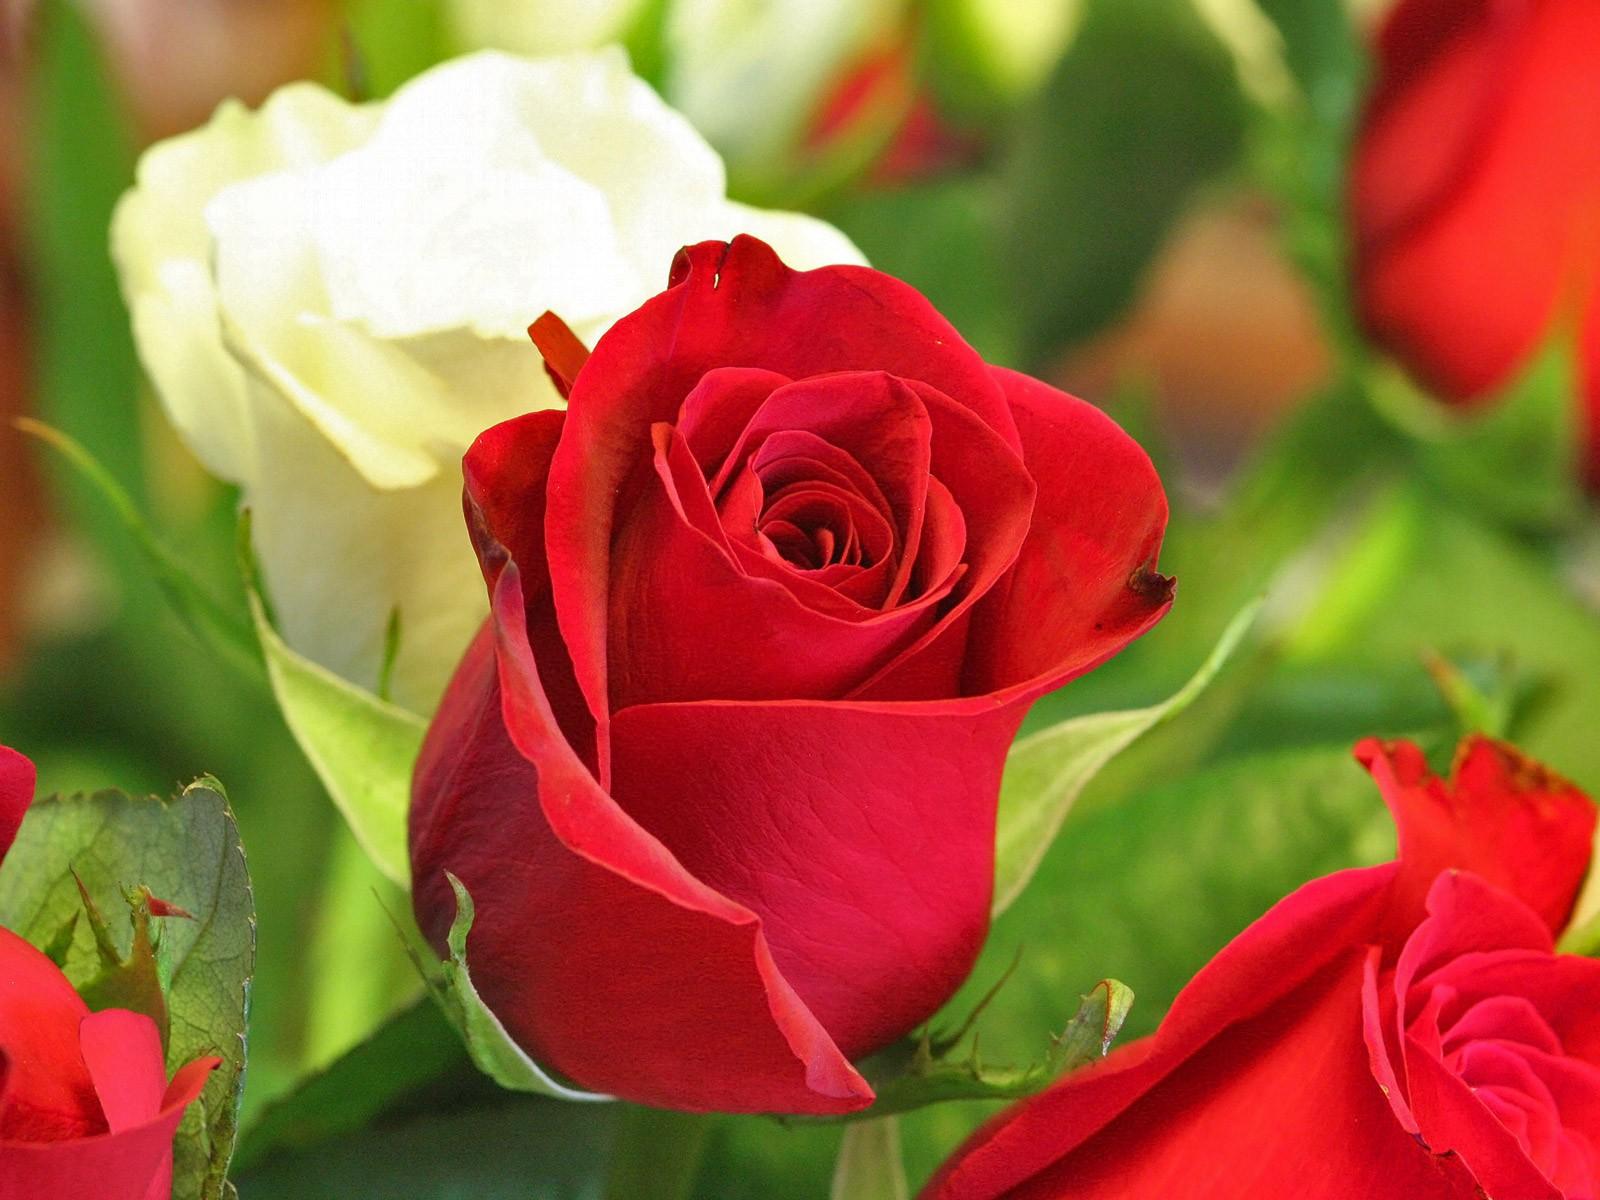 Hoa hồng đỏ mang ý nghĩa của tình yêu và những điều tốt đẹp trong cuộc sống